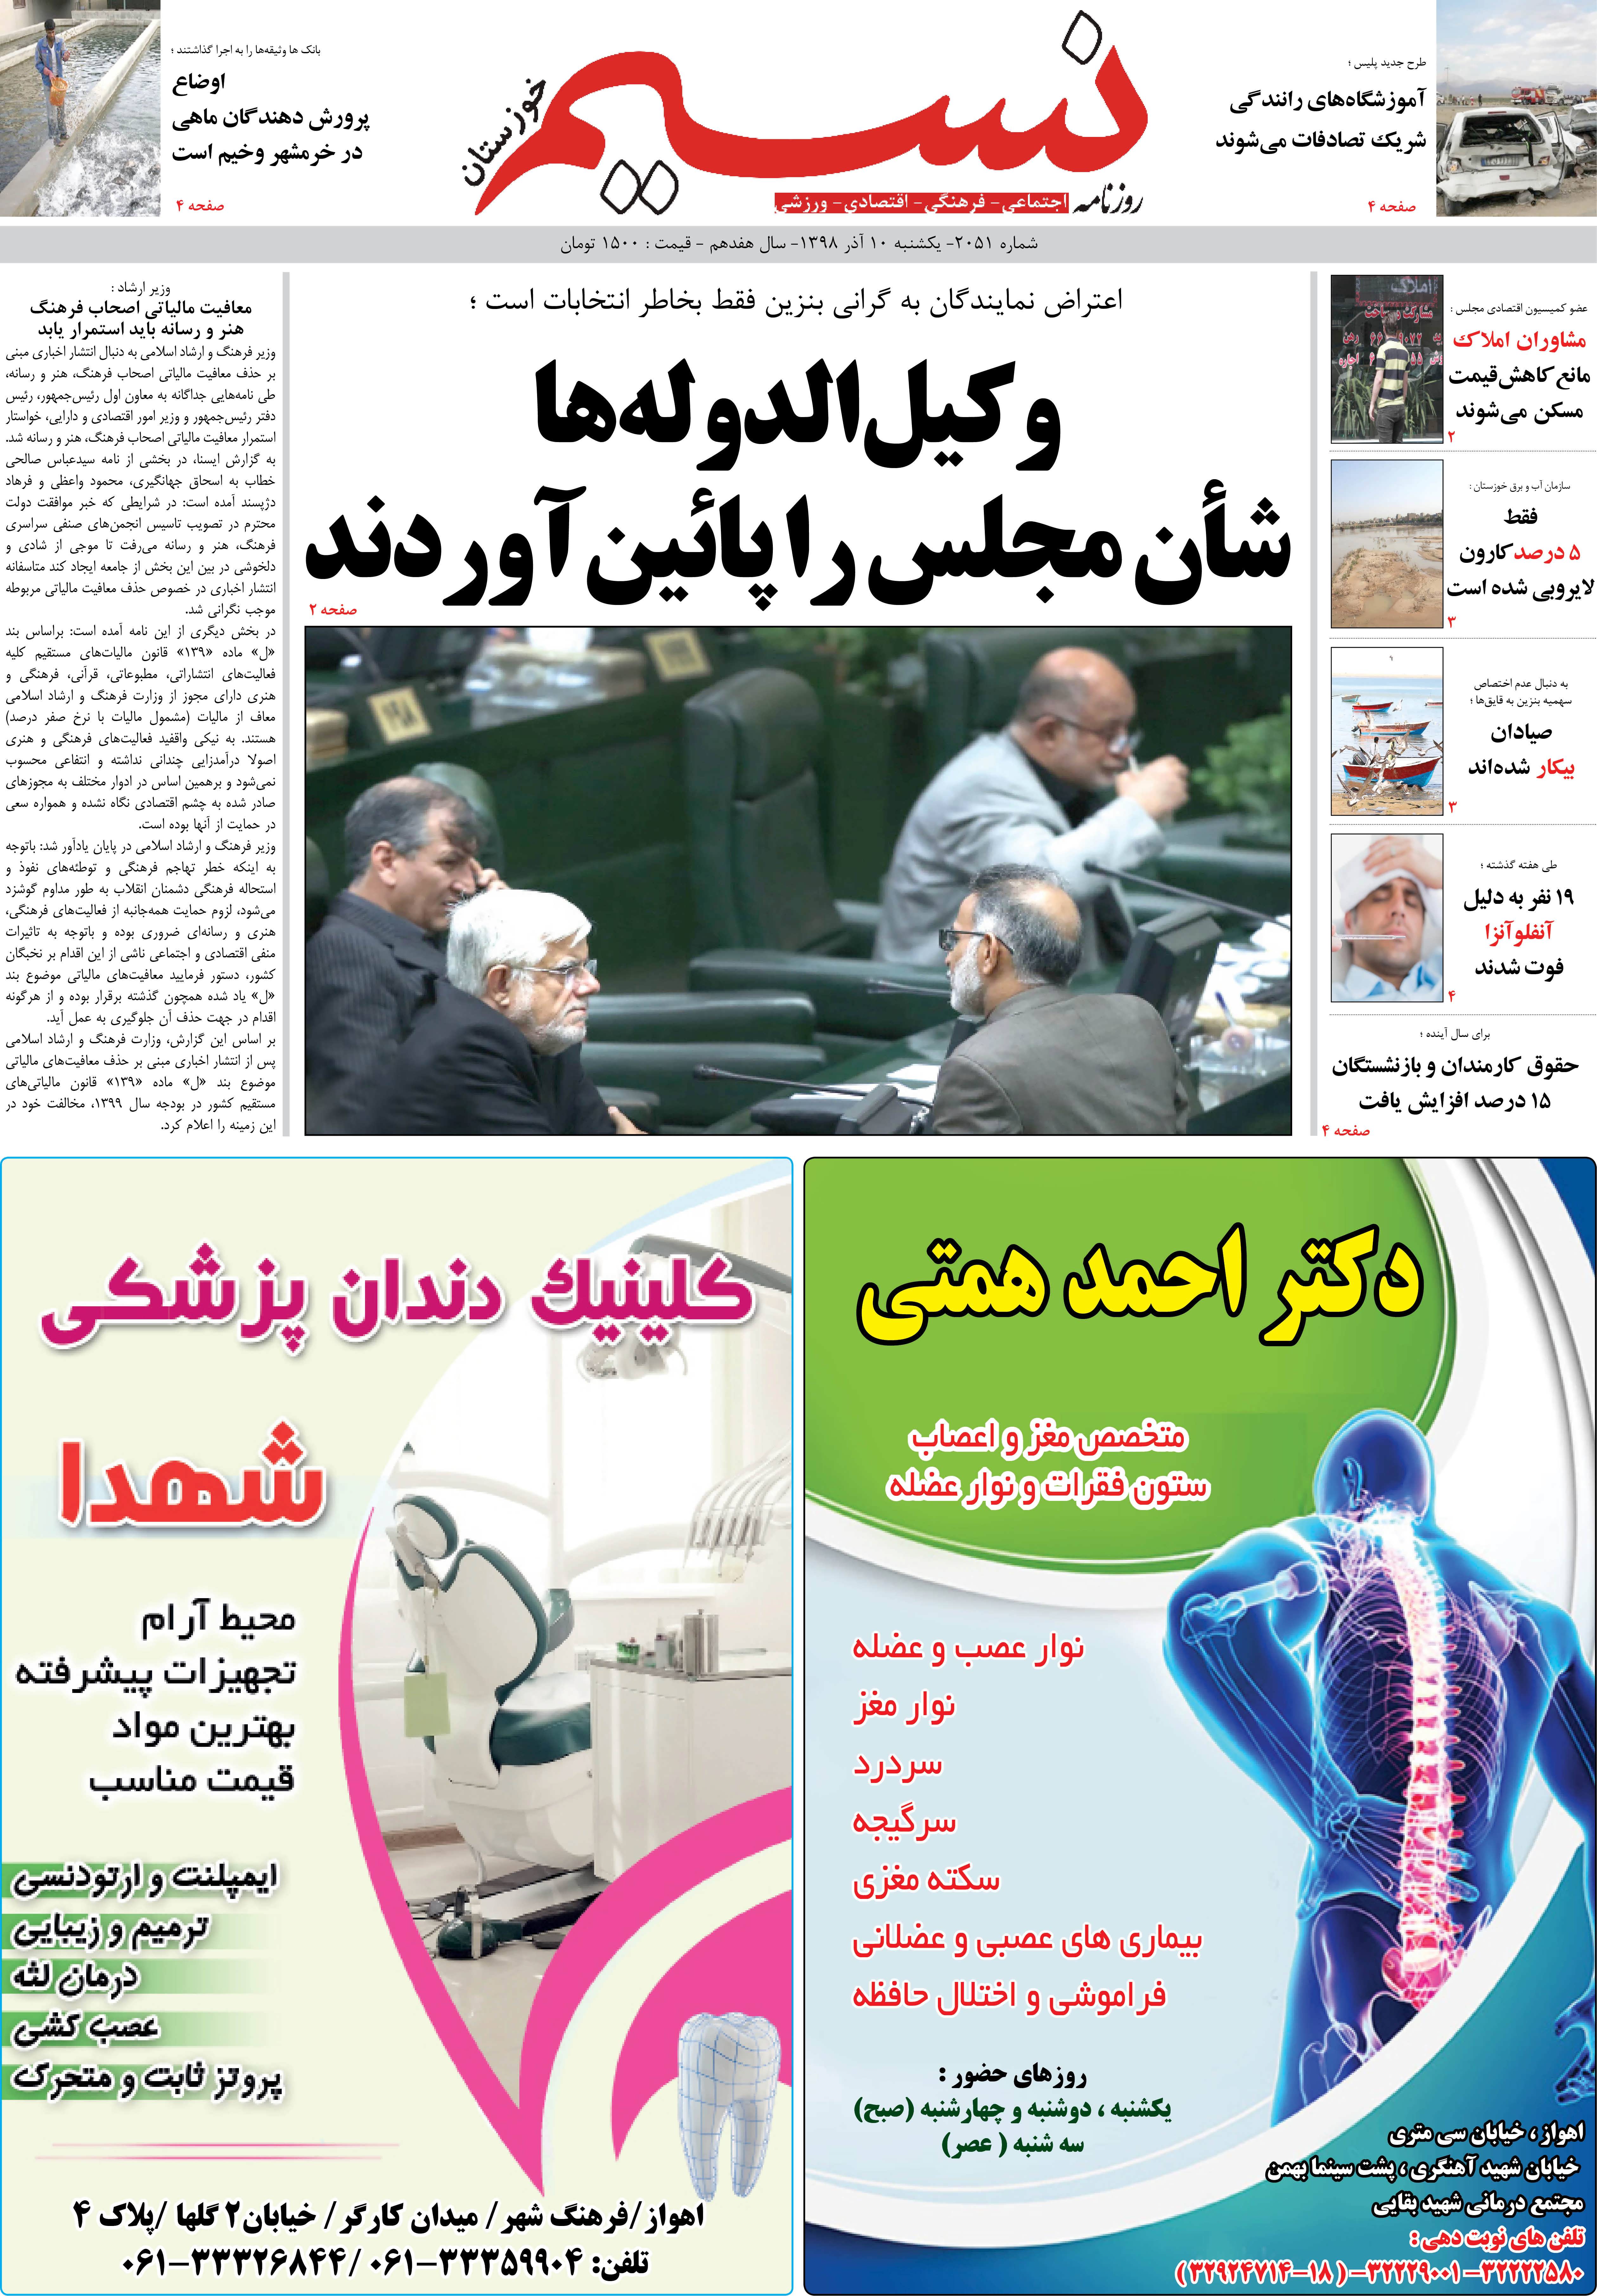 صفحه اصلی روزنامه نسیم شماره 2051 